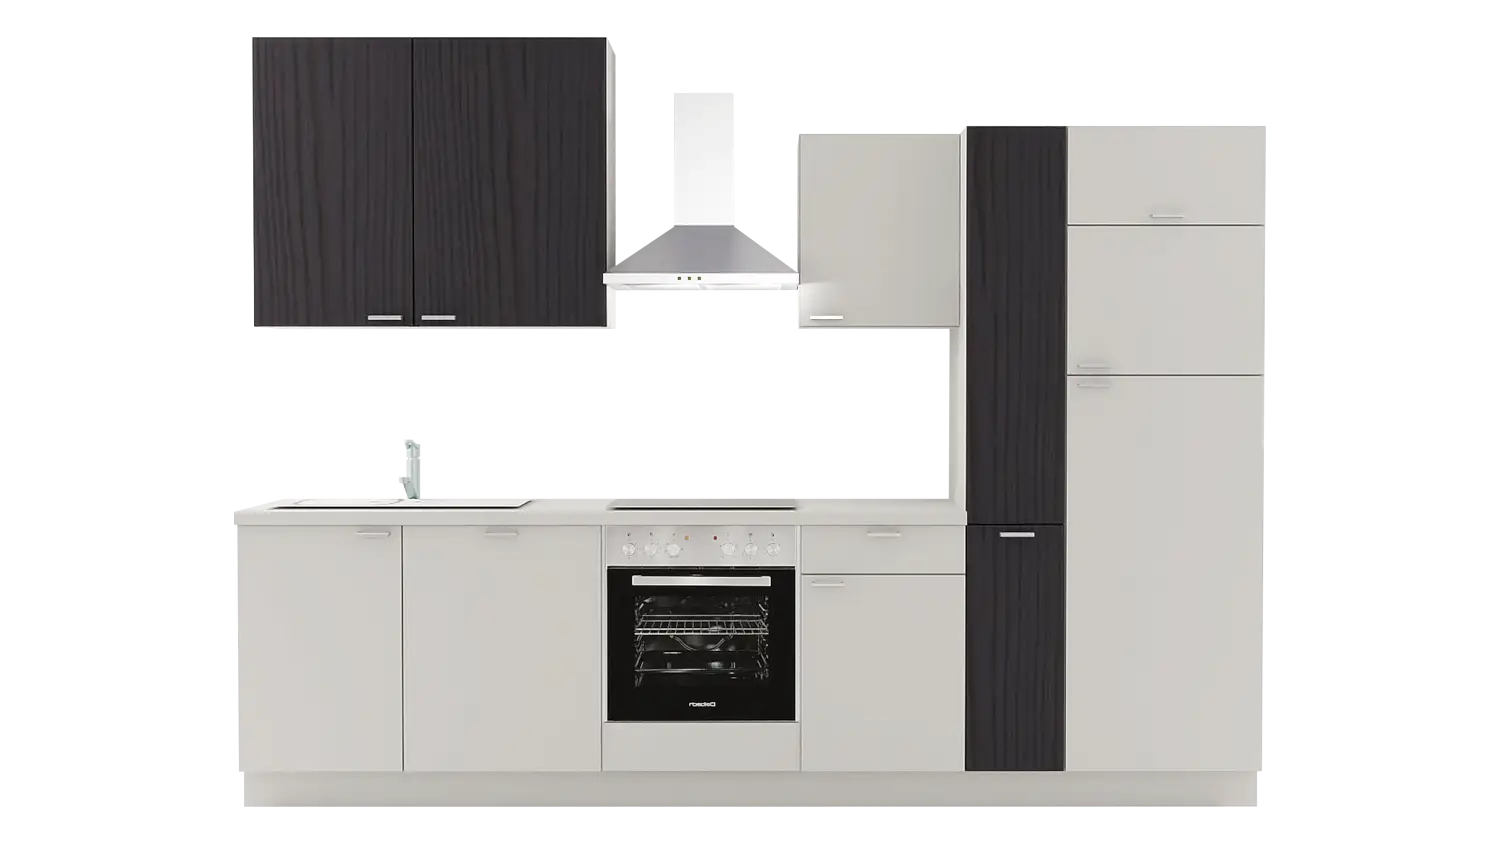 Express Küchenzeile mit Geräten in Hellgrau & Esche schwarz: 310 cm, Spüle links | Küchenblock "EXK750-1-1-l" / Bild 1